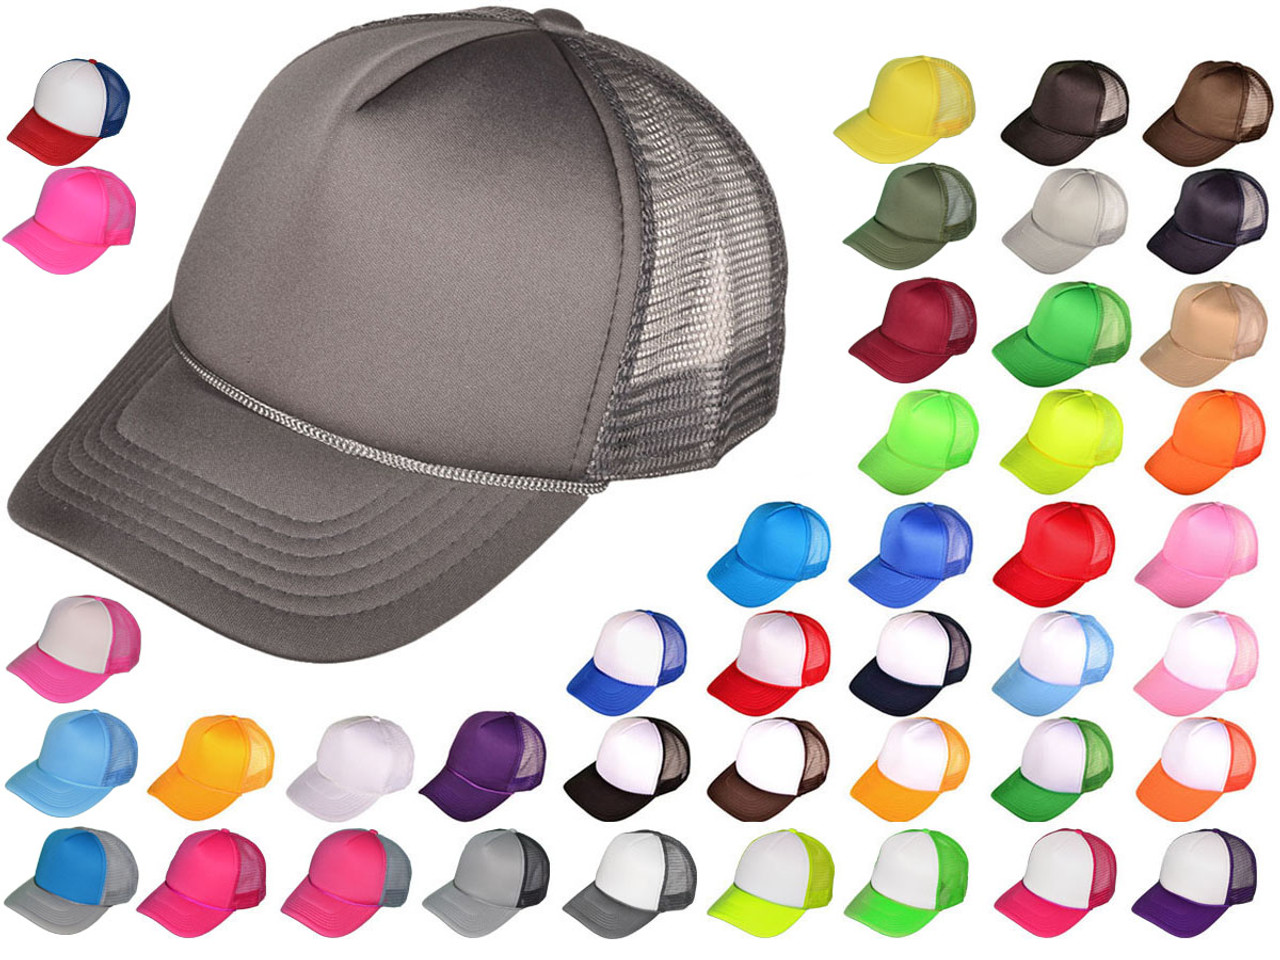 Wholesale trucker hats: Bulk Deals for Stylish Headwear缩略图